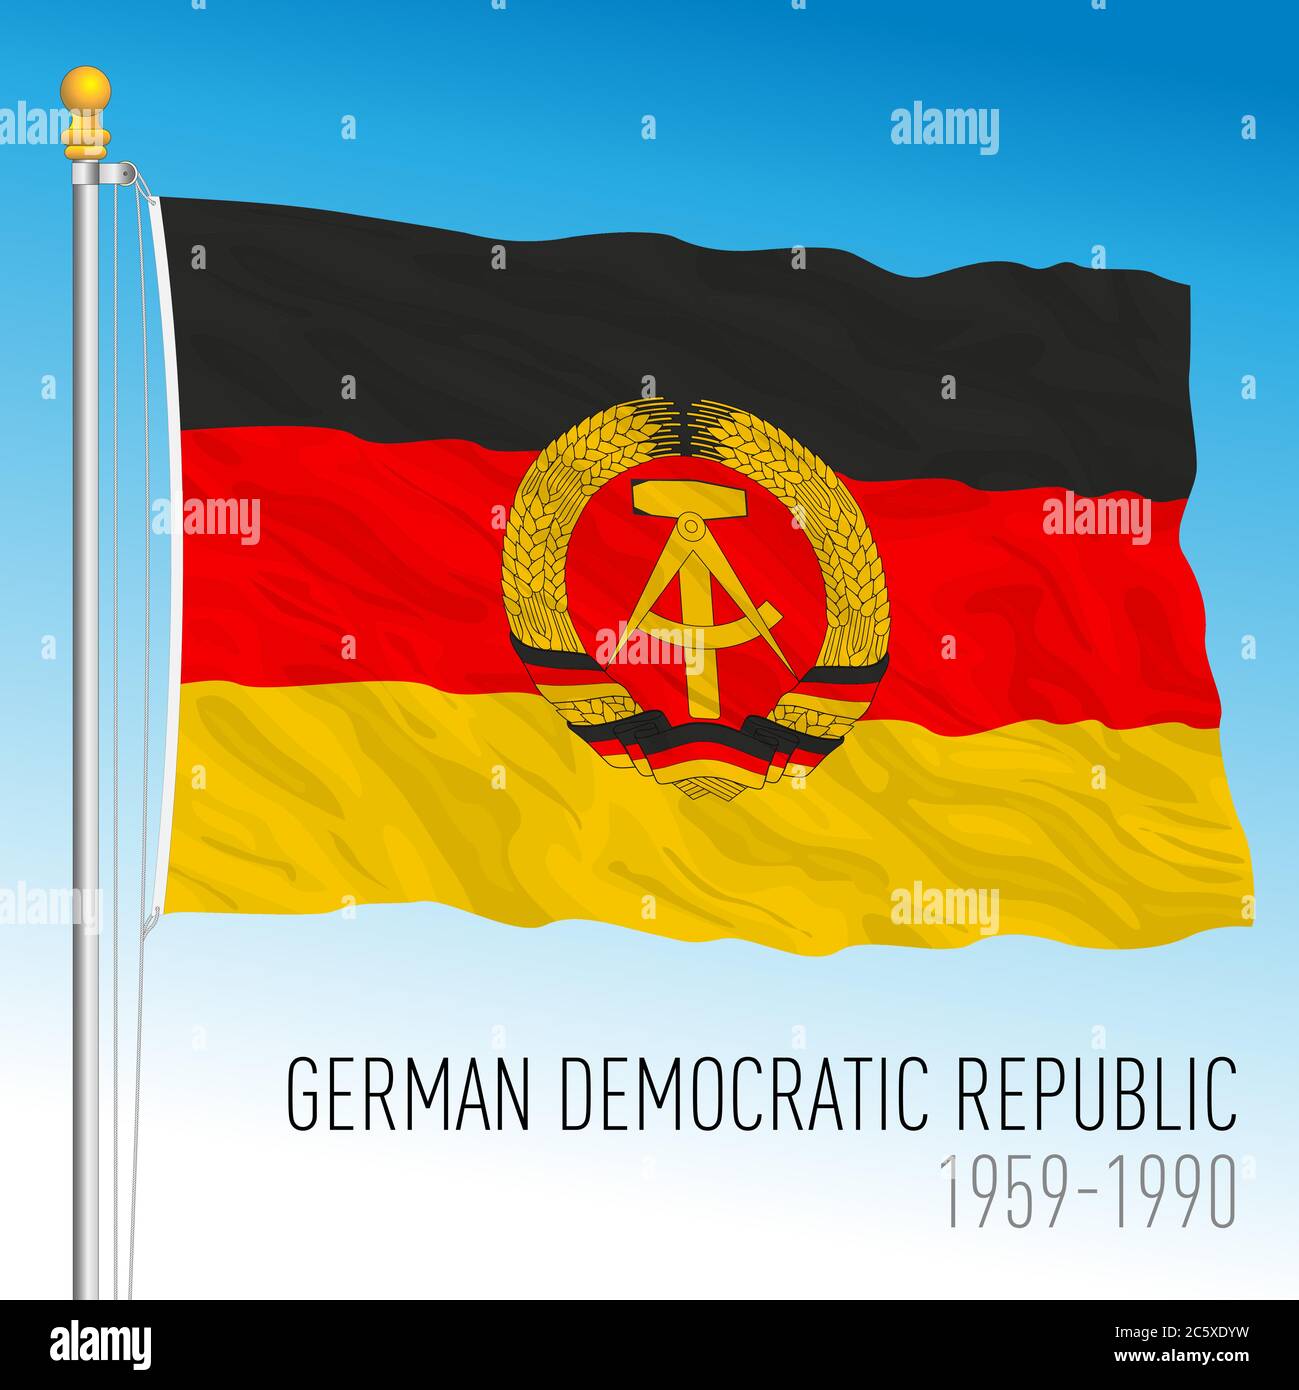 Bandiera storica della Repubblica democratica tedesca, Germania, 1959-1990, illustrazione vettoriale Illustrazione Vettoriale